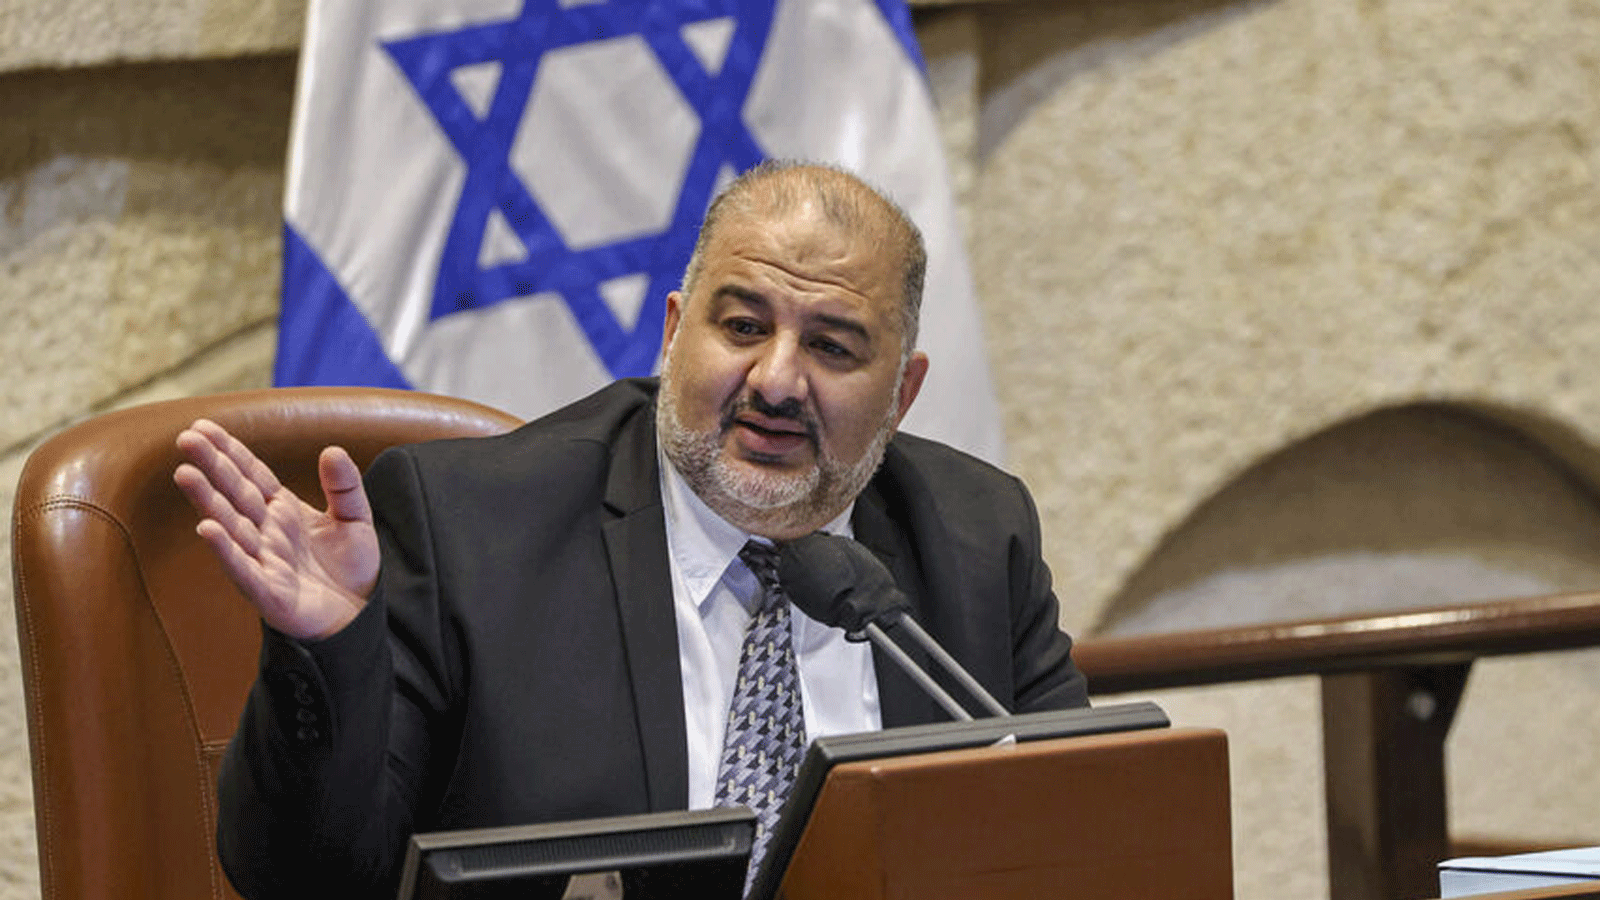 منصور عباس، رئيس حزب التجمع الإسلامي المحافظ في إسرائيل، يتحدث بصفته نائب رئيس الكنيست خلال جلسة مكتملة النصاب حول ميزانية الدولة في 2 أيلول\سبتمبر 2021